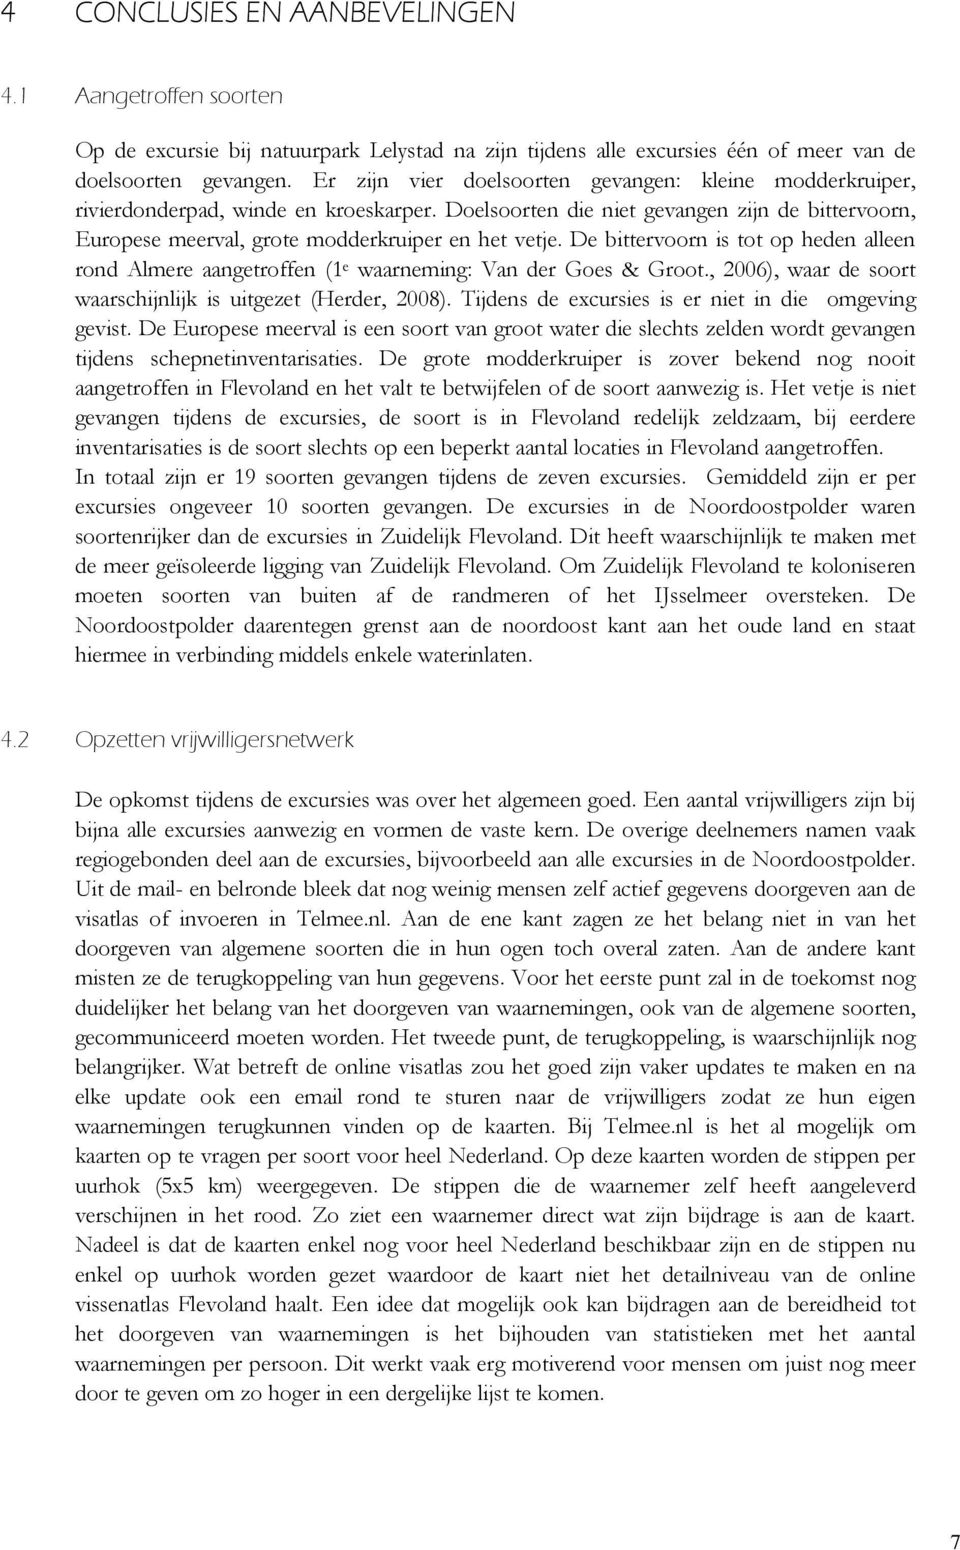 De bittervoorn is tot op heden alleen rond Almere aangetroffen (1 e waarneming: Van der Goes & Groot., 2006), waar de soort waarschijnlijk is uitgezet (Herder, 2008).